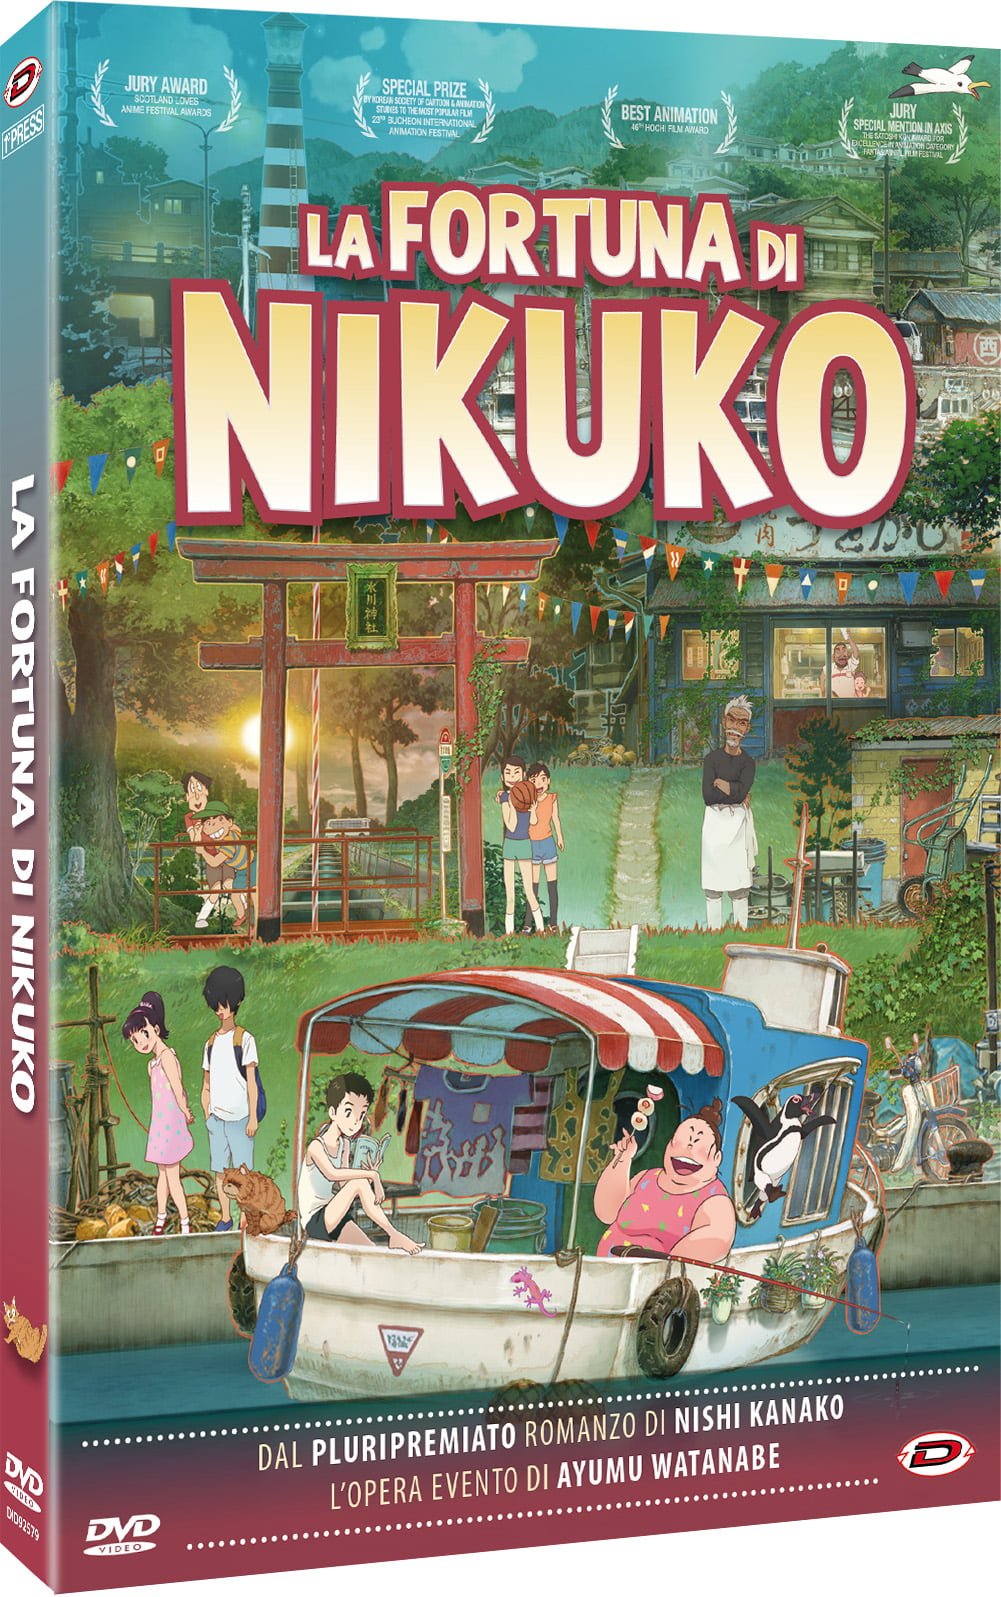 LA FORTUNA DI NIKUKO DVD (2 DVD) (FIRST PRESS)